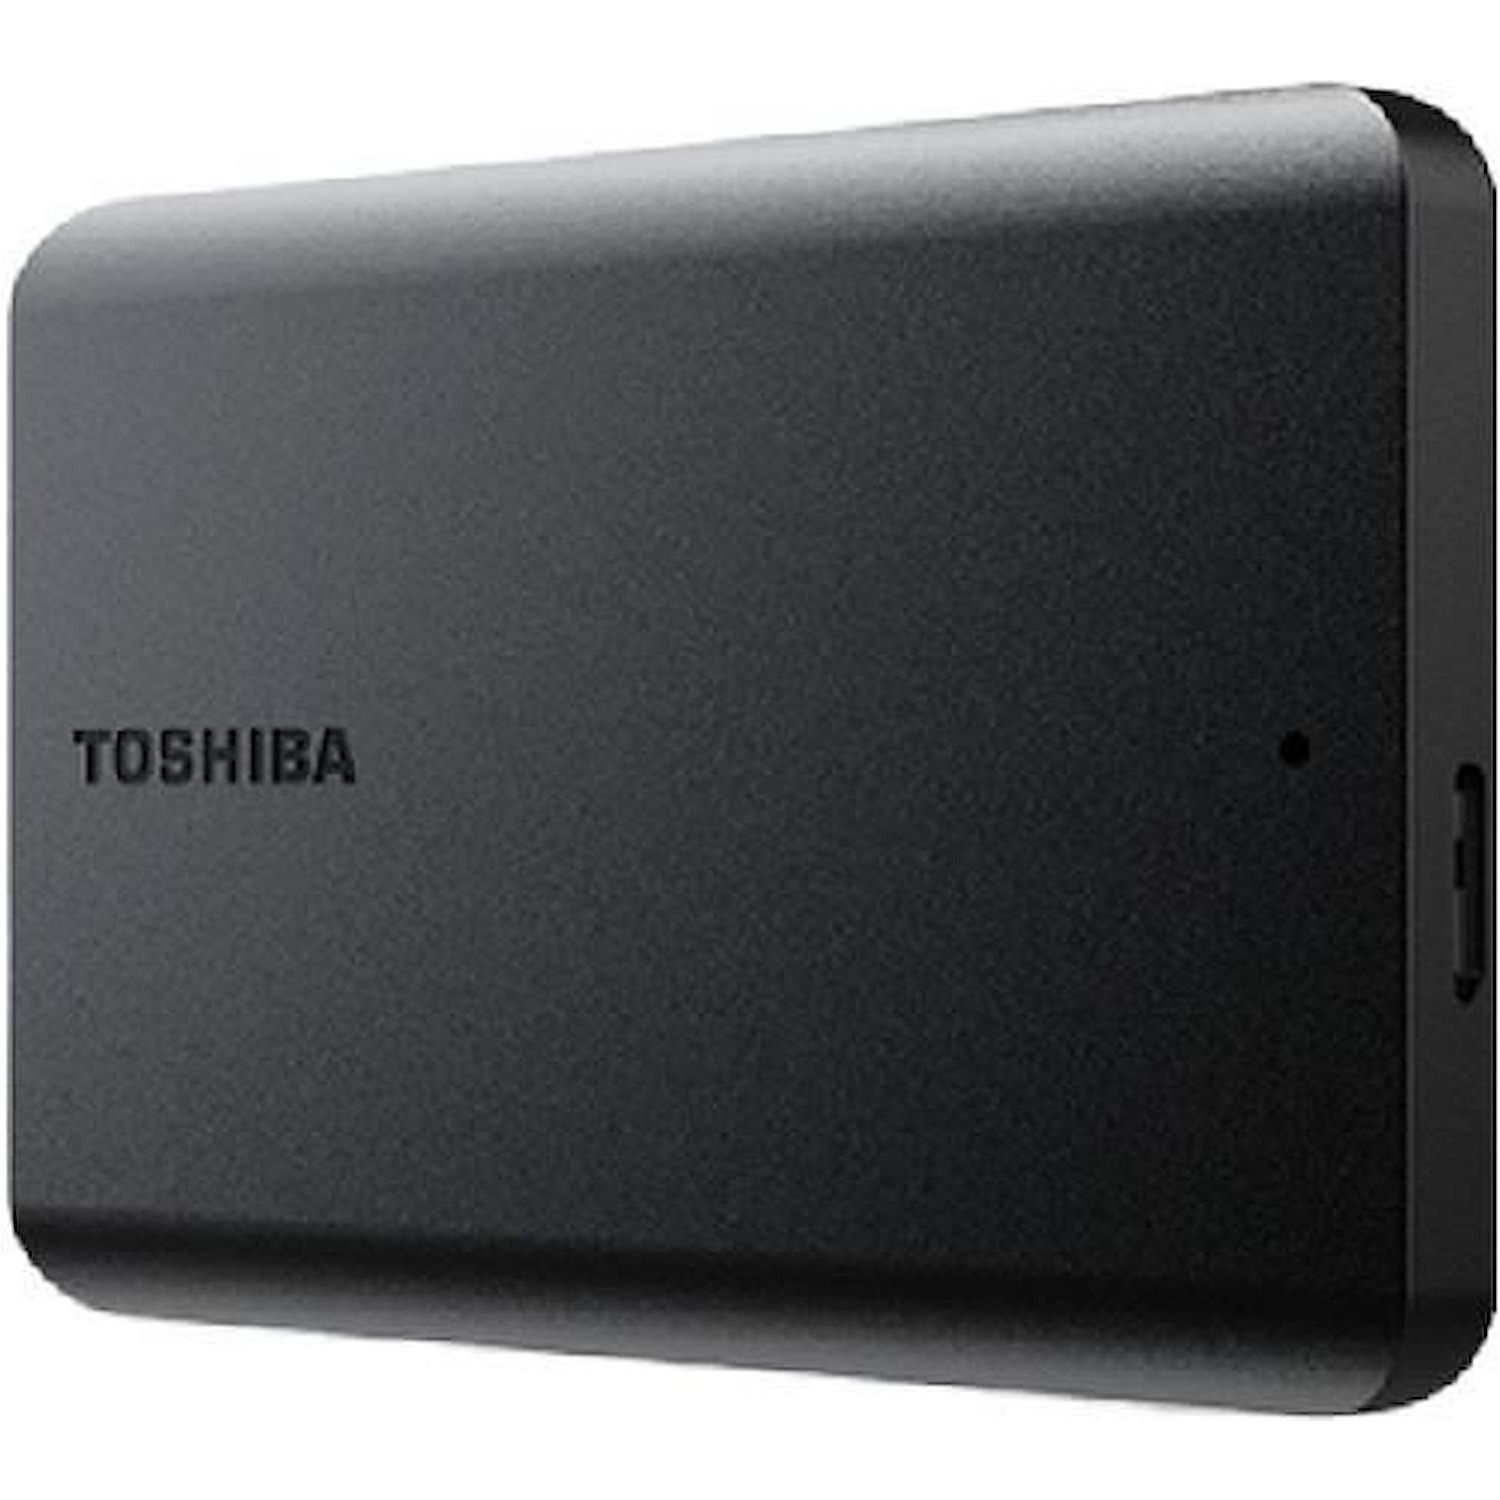 Image of TOSHIBA 1TB USB 3.2 NERO